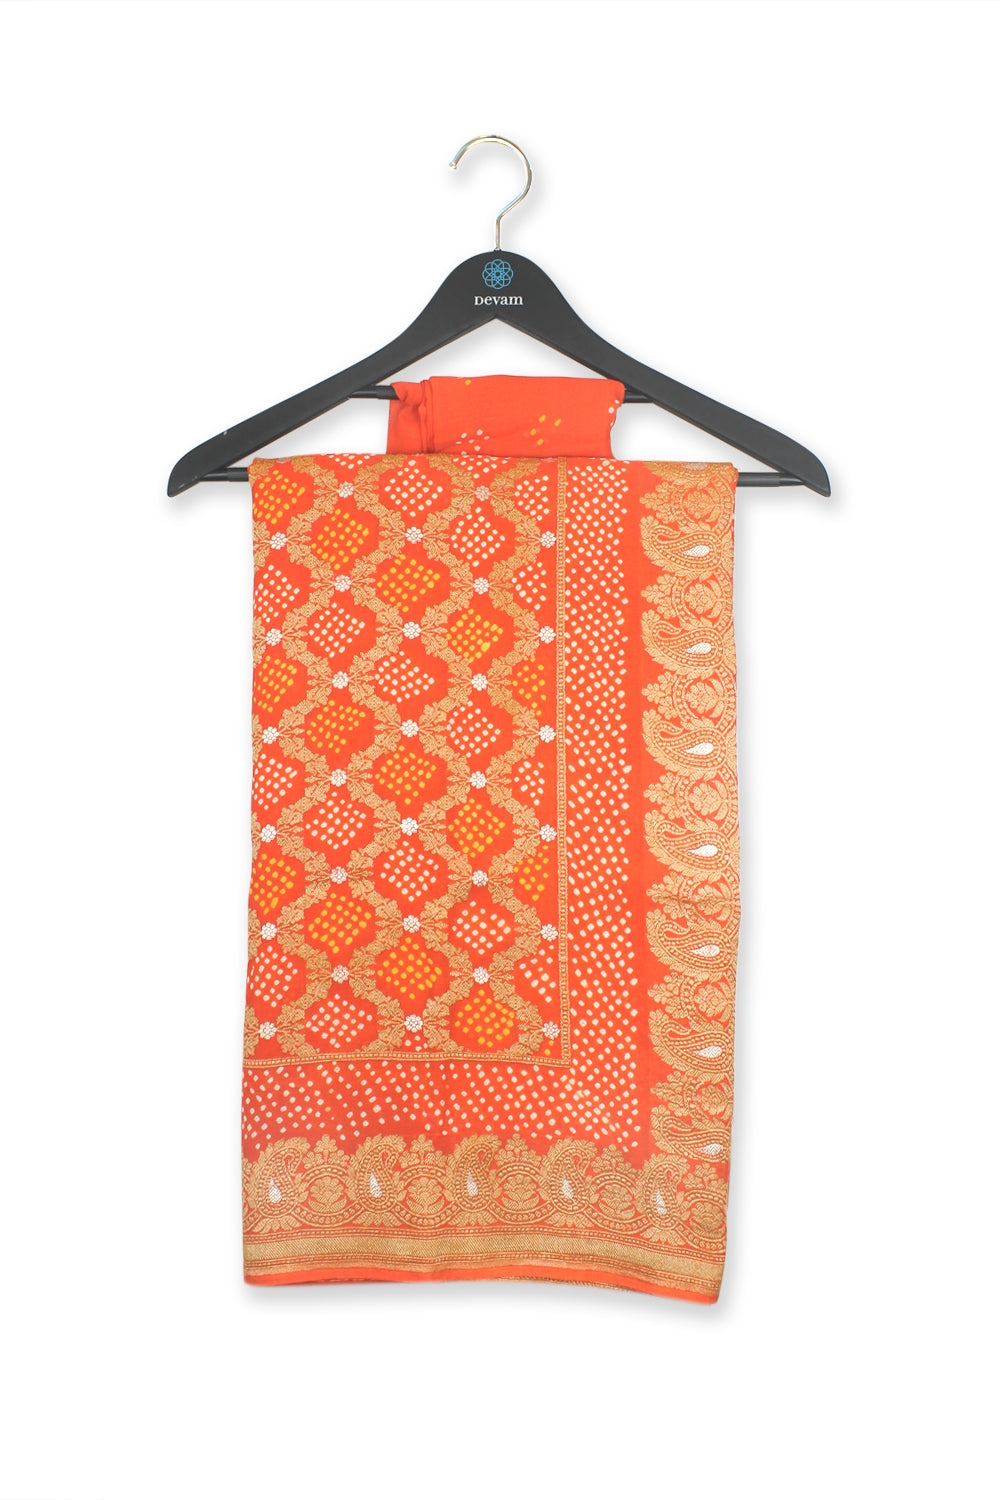 Sunset Orange Handloom Bandhej Brocade Georgette Saree Devam